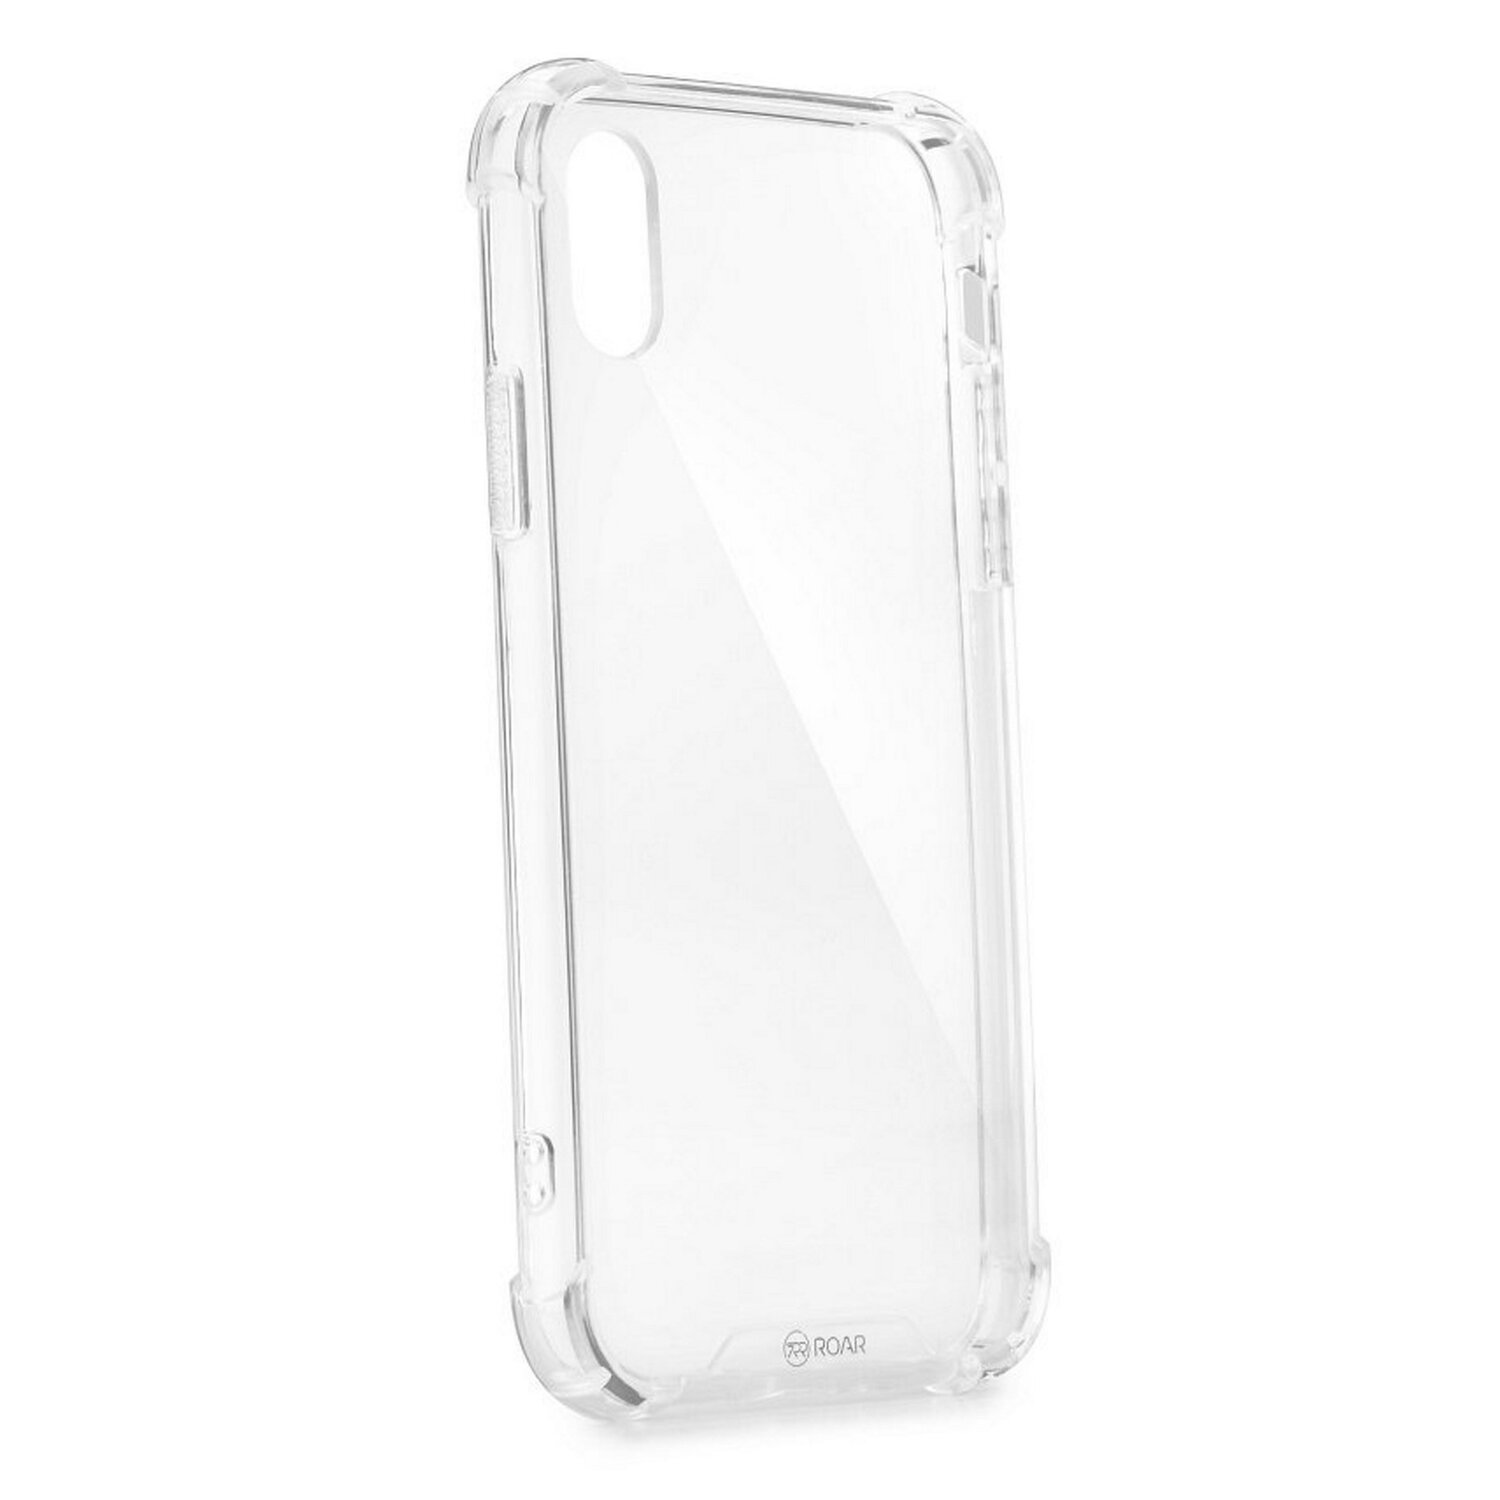 COFI Roar Armor Case, Note Transparent Redmi 8T, Xiaomi, Bumper